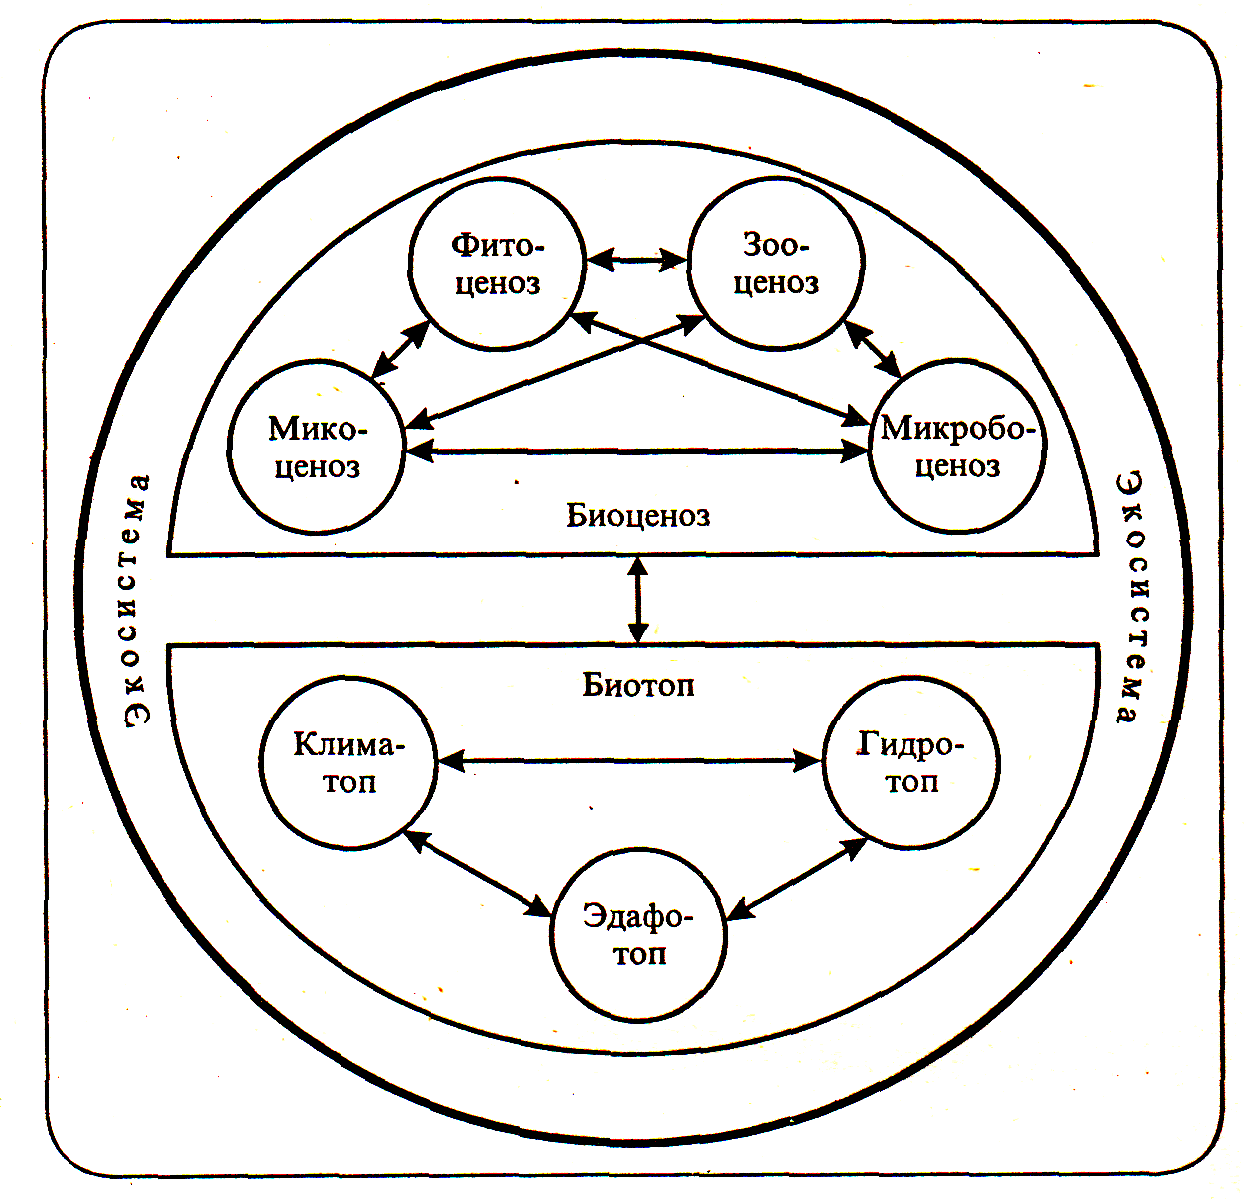 Искусственная биологическая система. Структура биогеоценоза и схема взаимодействия между компонентами. Схема биогеоценоза и экосистемы. Схема состава компонентов экосистемы. Схема структурных компонентов биоценоза.